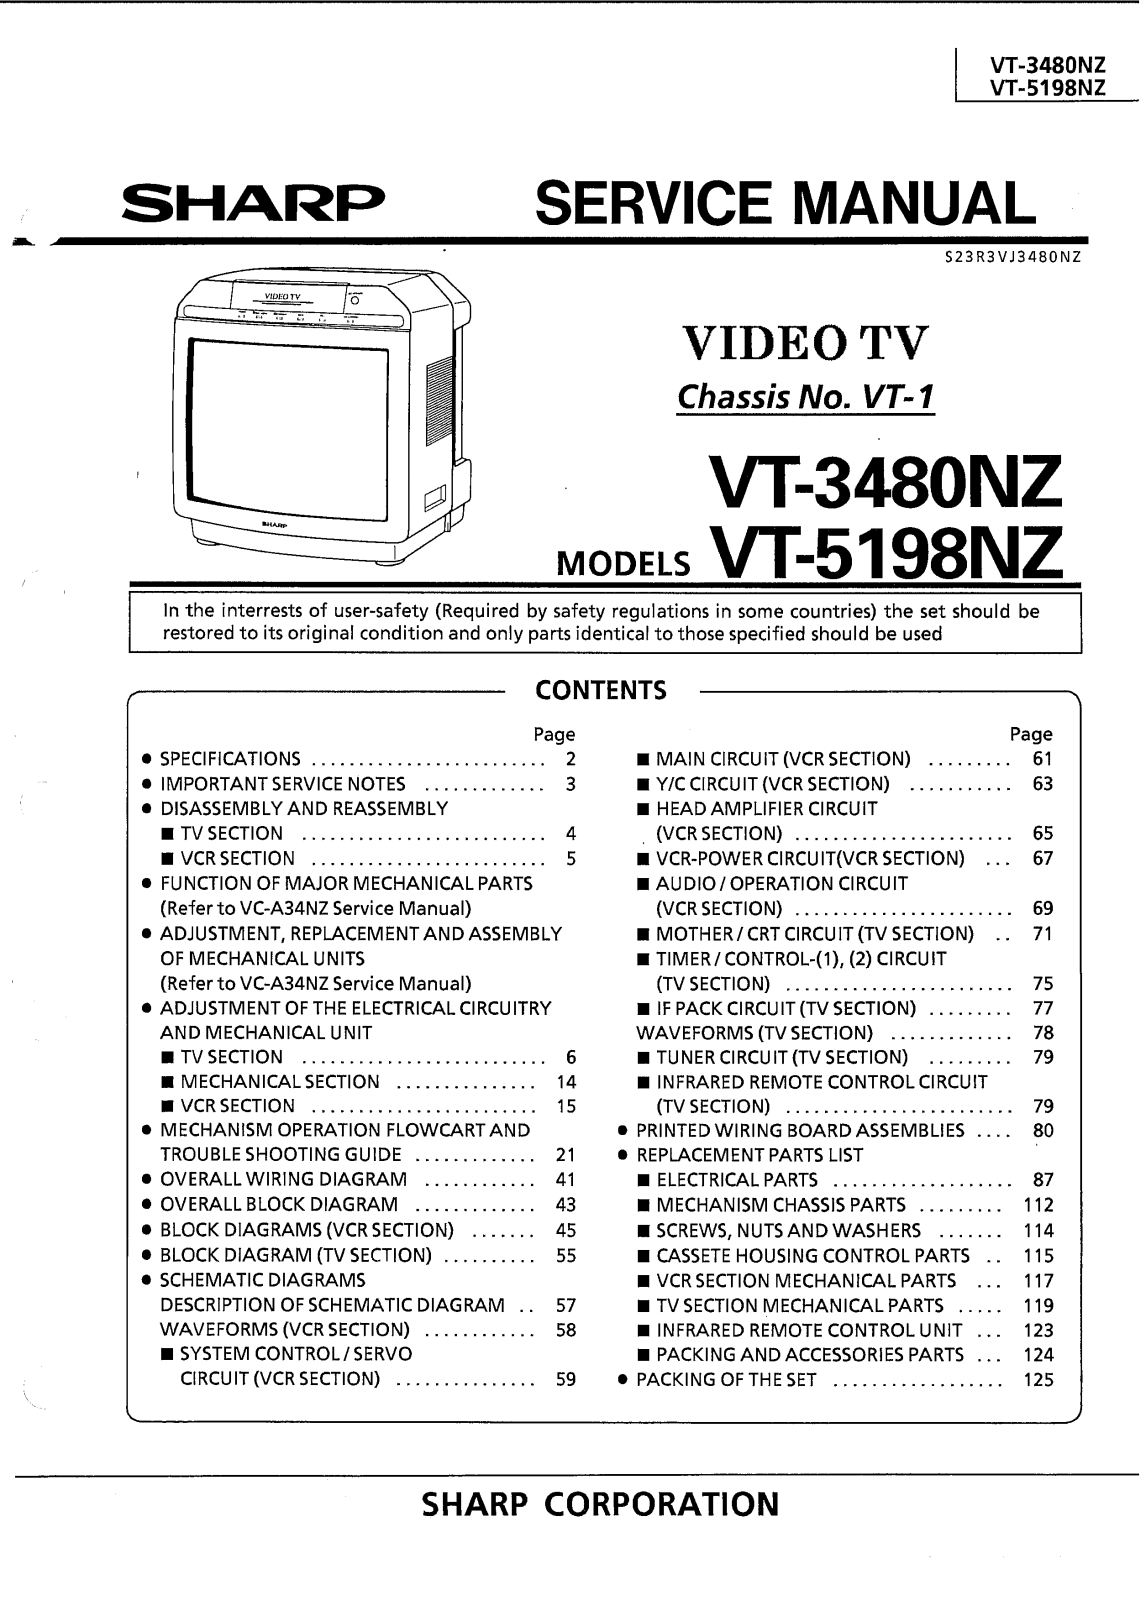 SHARP VT-3480NZ, VT-5198NZ Service Manual